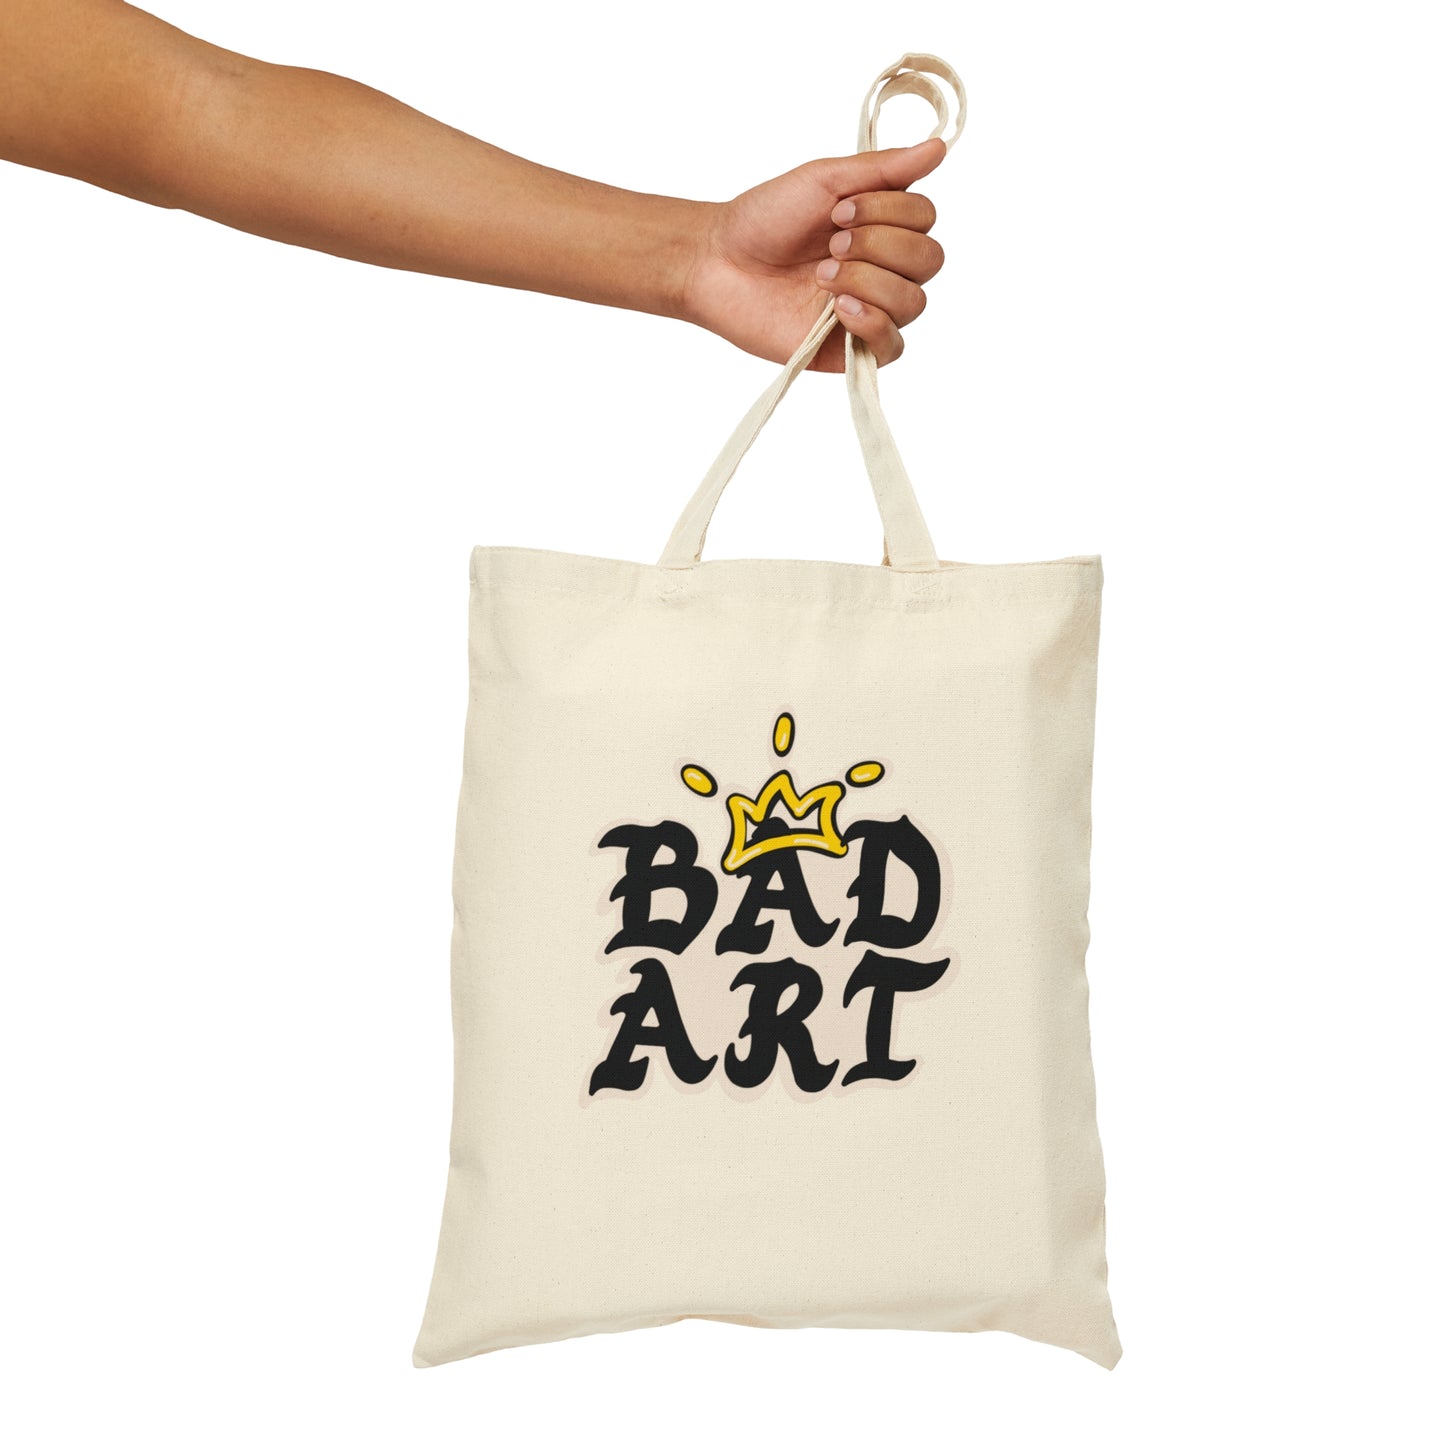 Bad Art Tote Bag